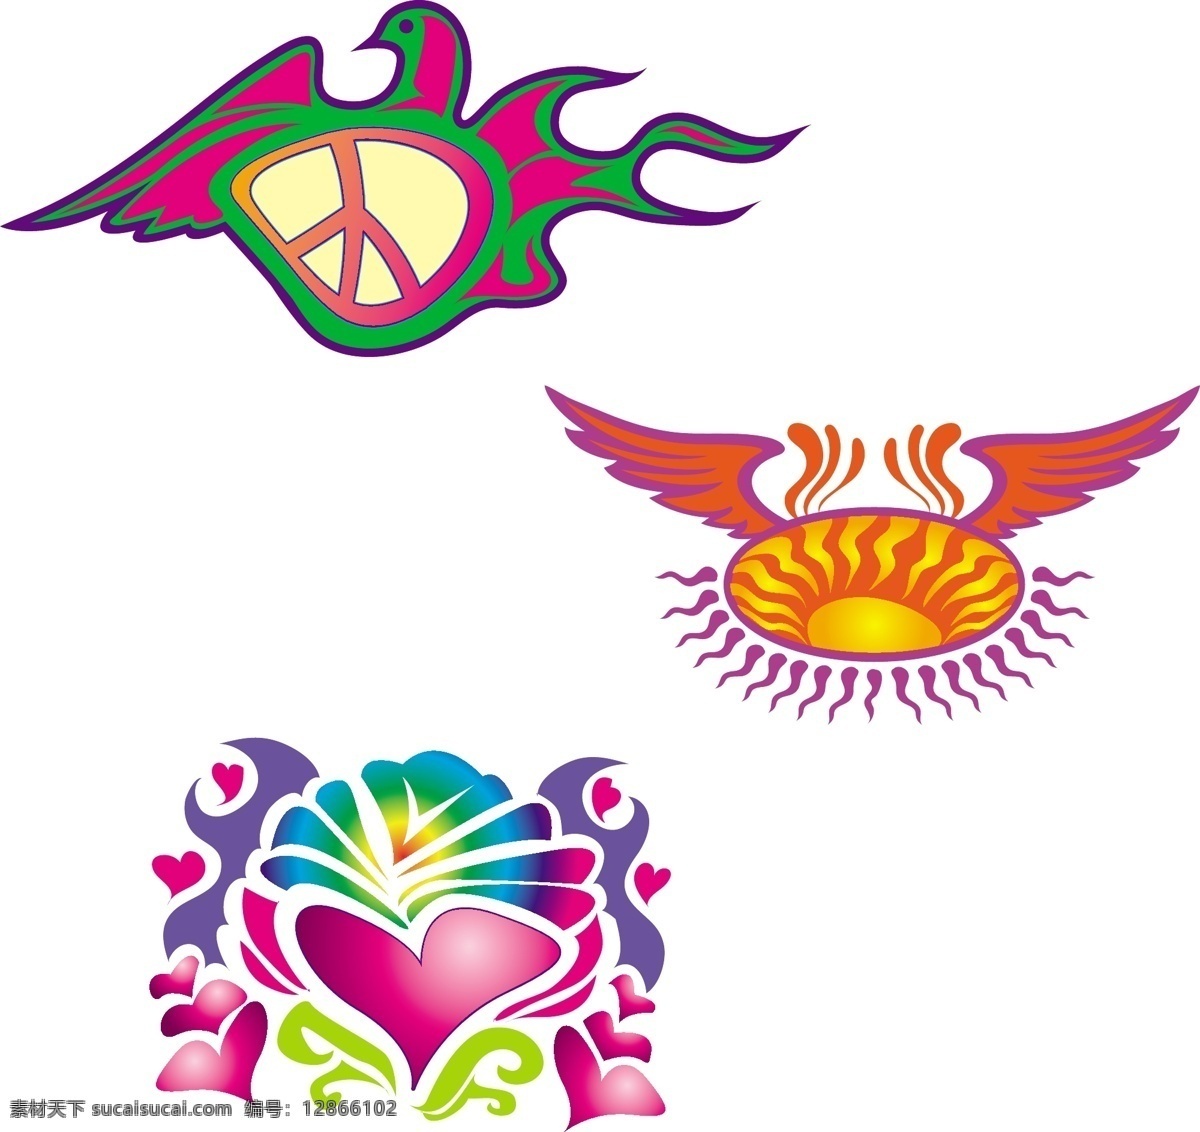 组 鸟 翅膀 心形 图形 元素 装饰图案 彩色 多样 图形形状 平面素材 设计素材